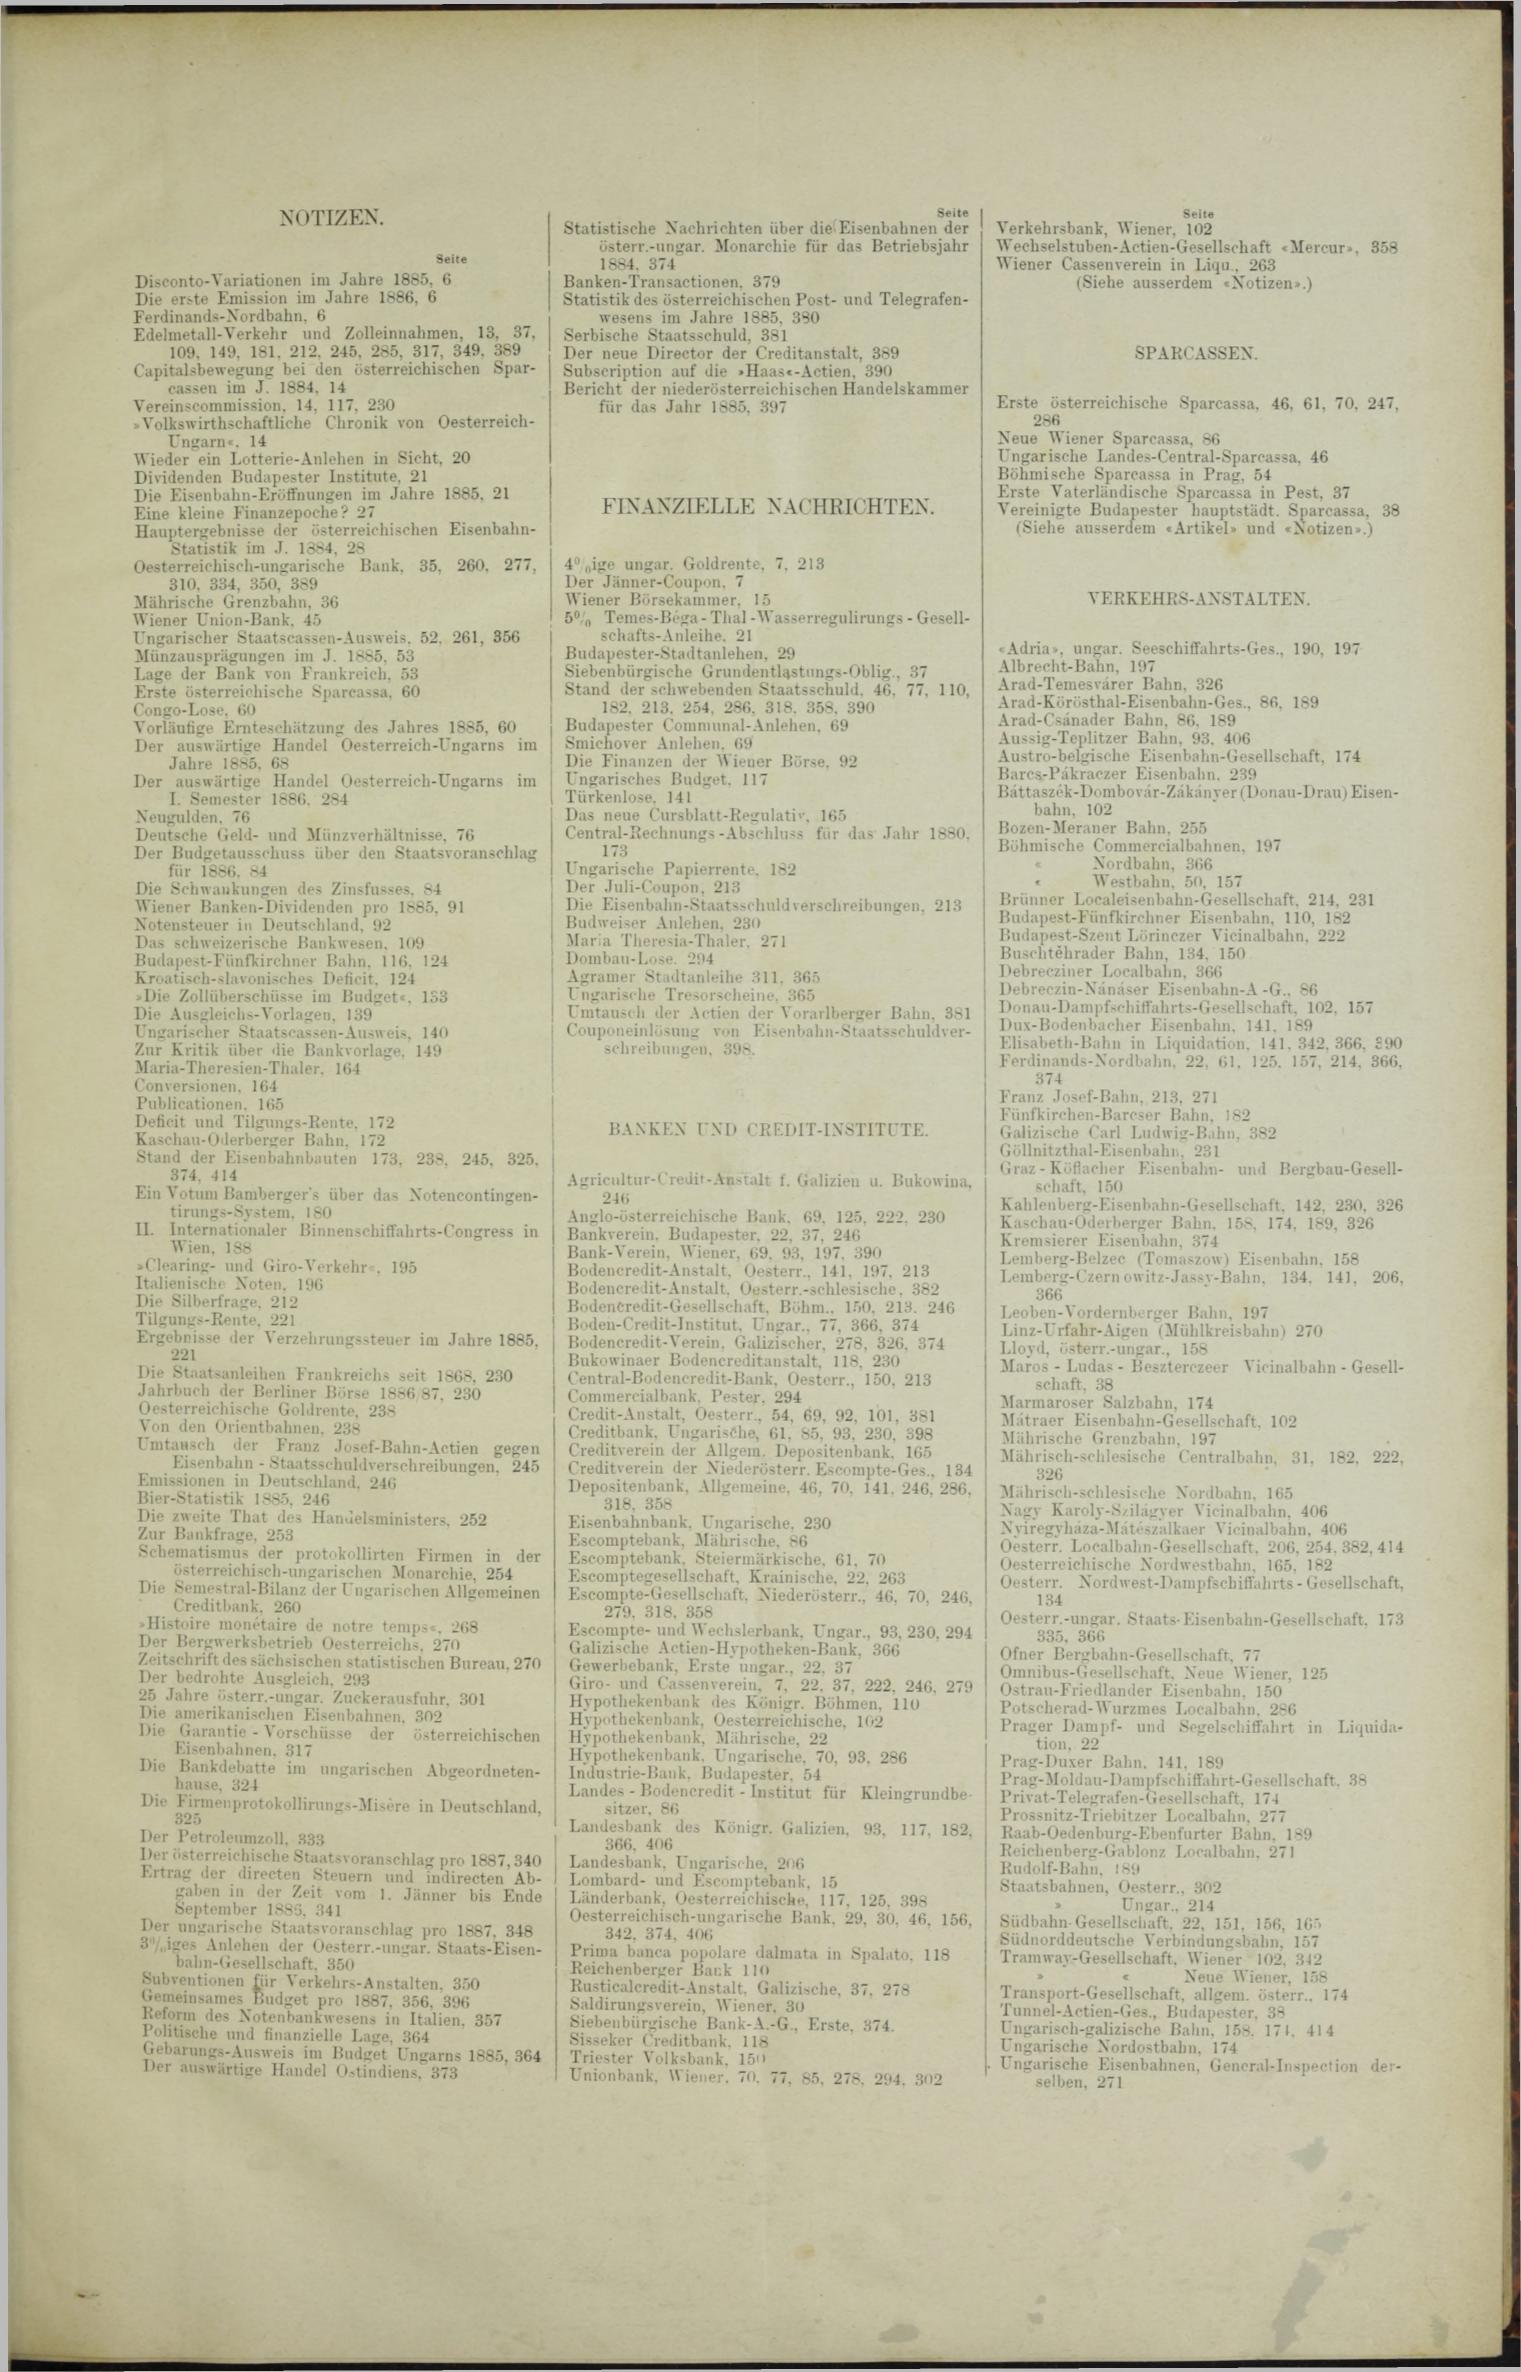 Der Tresor 11.02.1886 - Seite 11